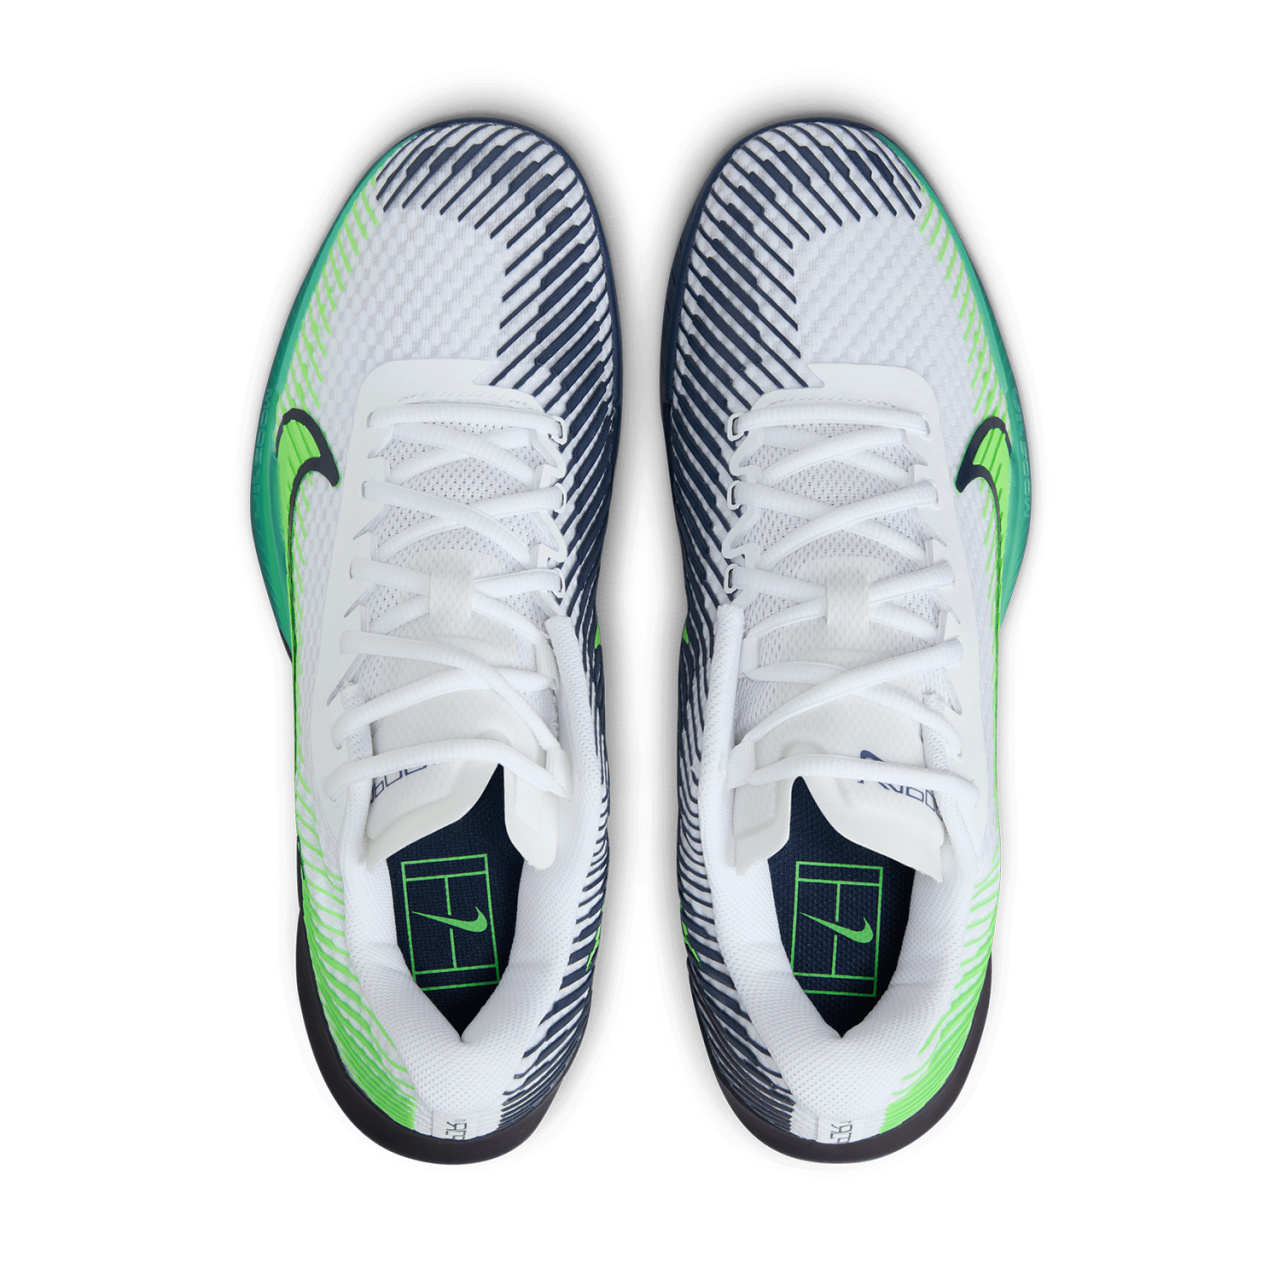 Теннисные кроссовки Nike M Zoom Vapor 11 HC. Фото ¹5